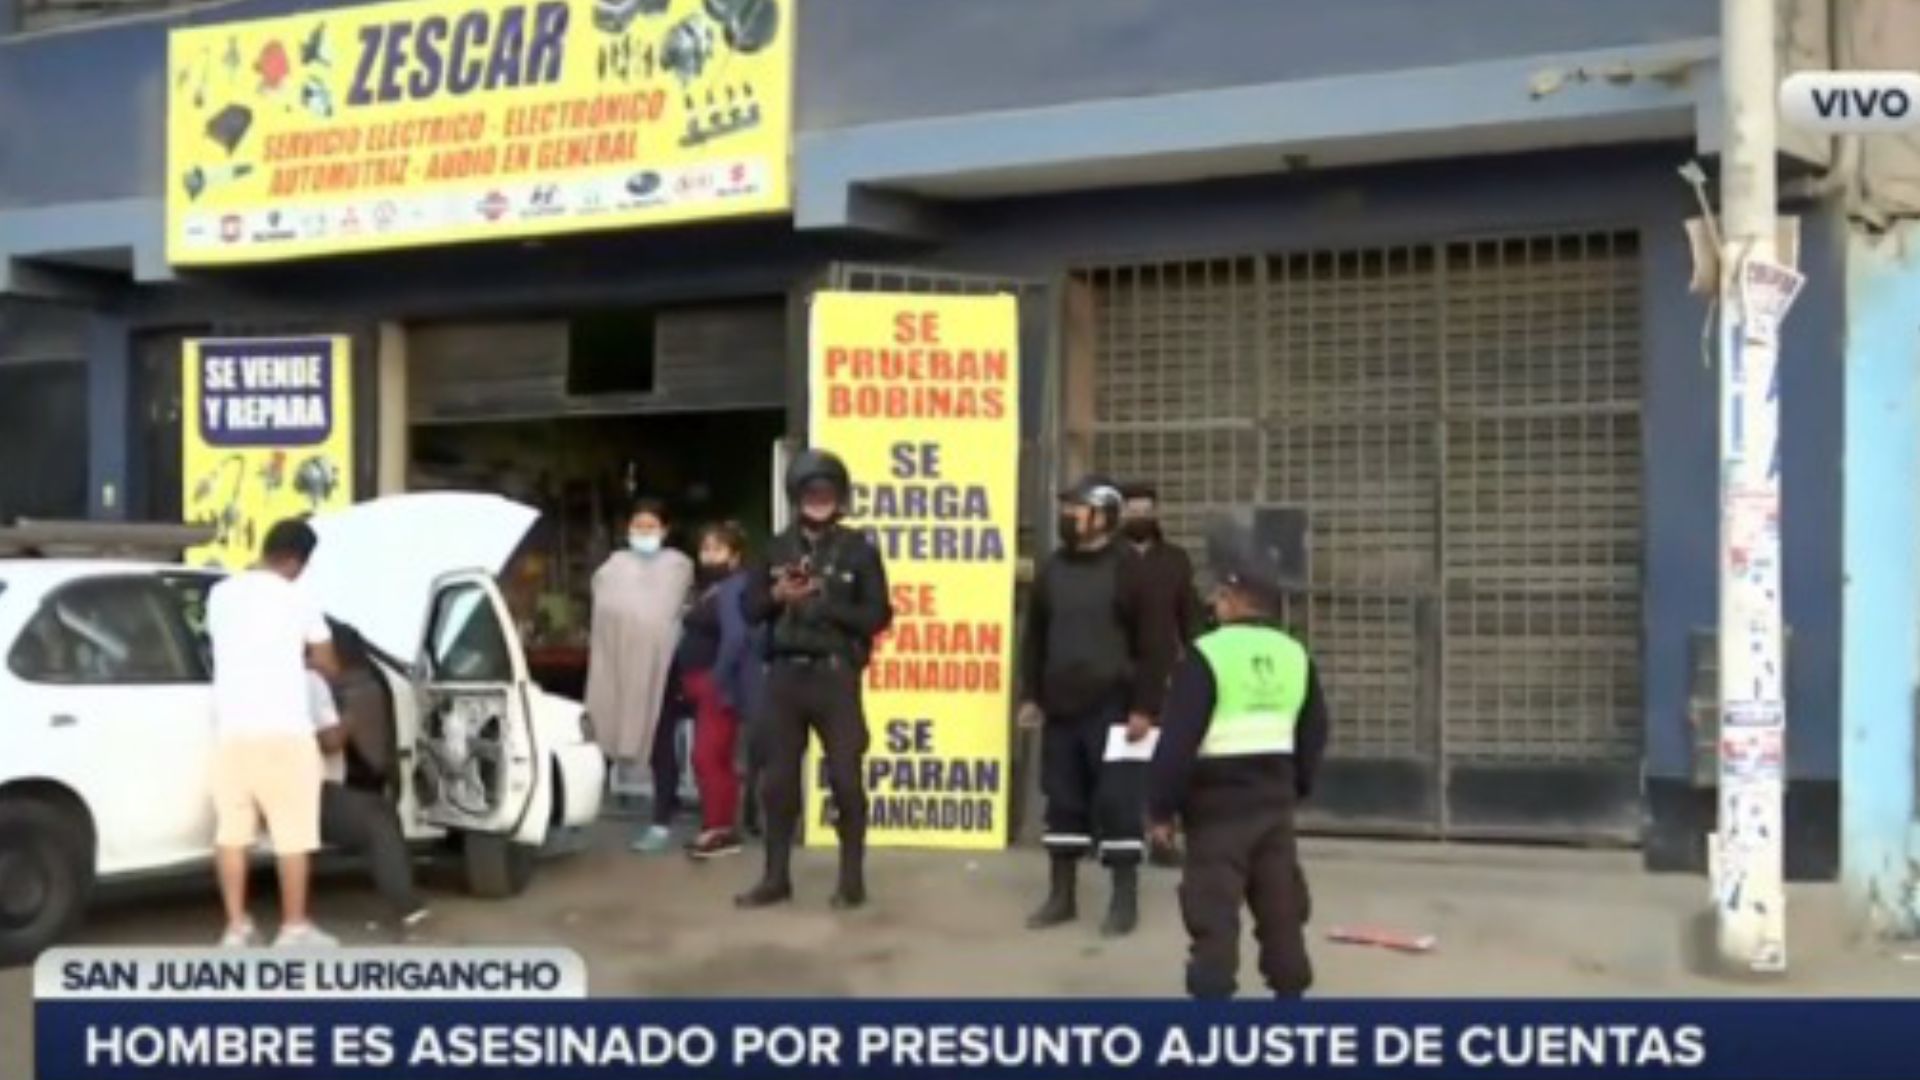 San Juan de Lurigancho: Extranjero fue baleado por sicarios por presunto ajuste de cuentas